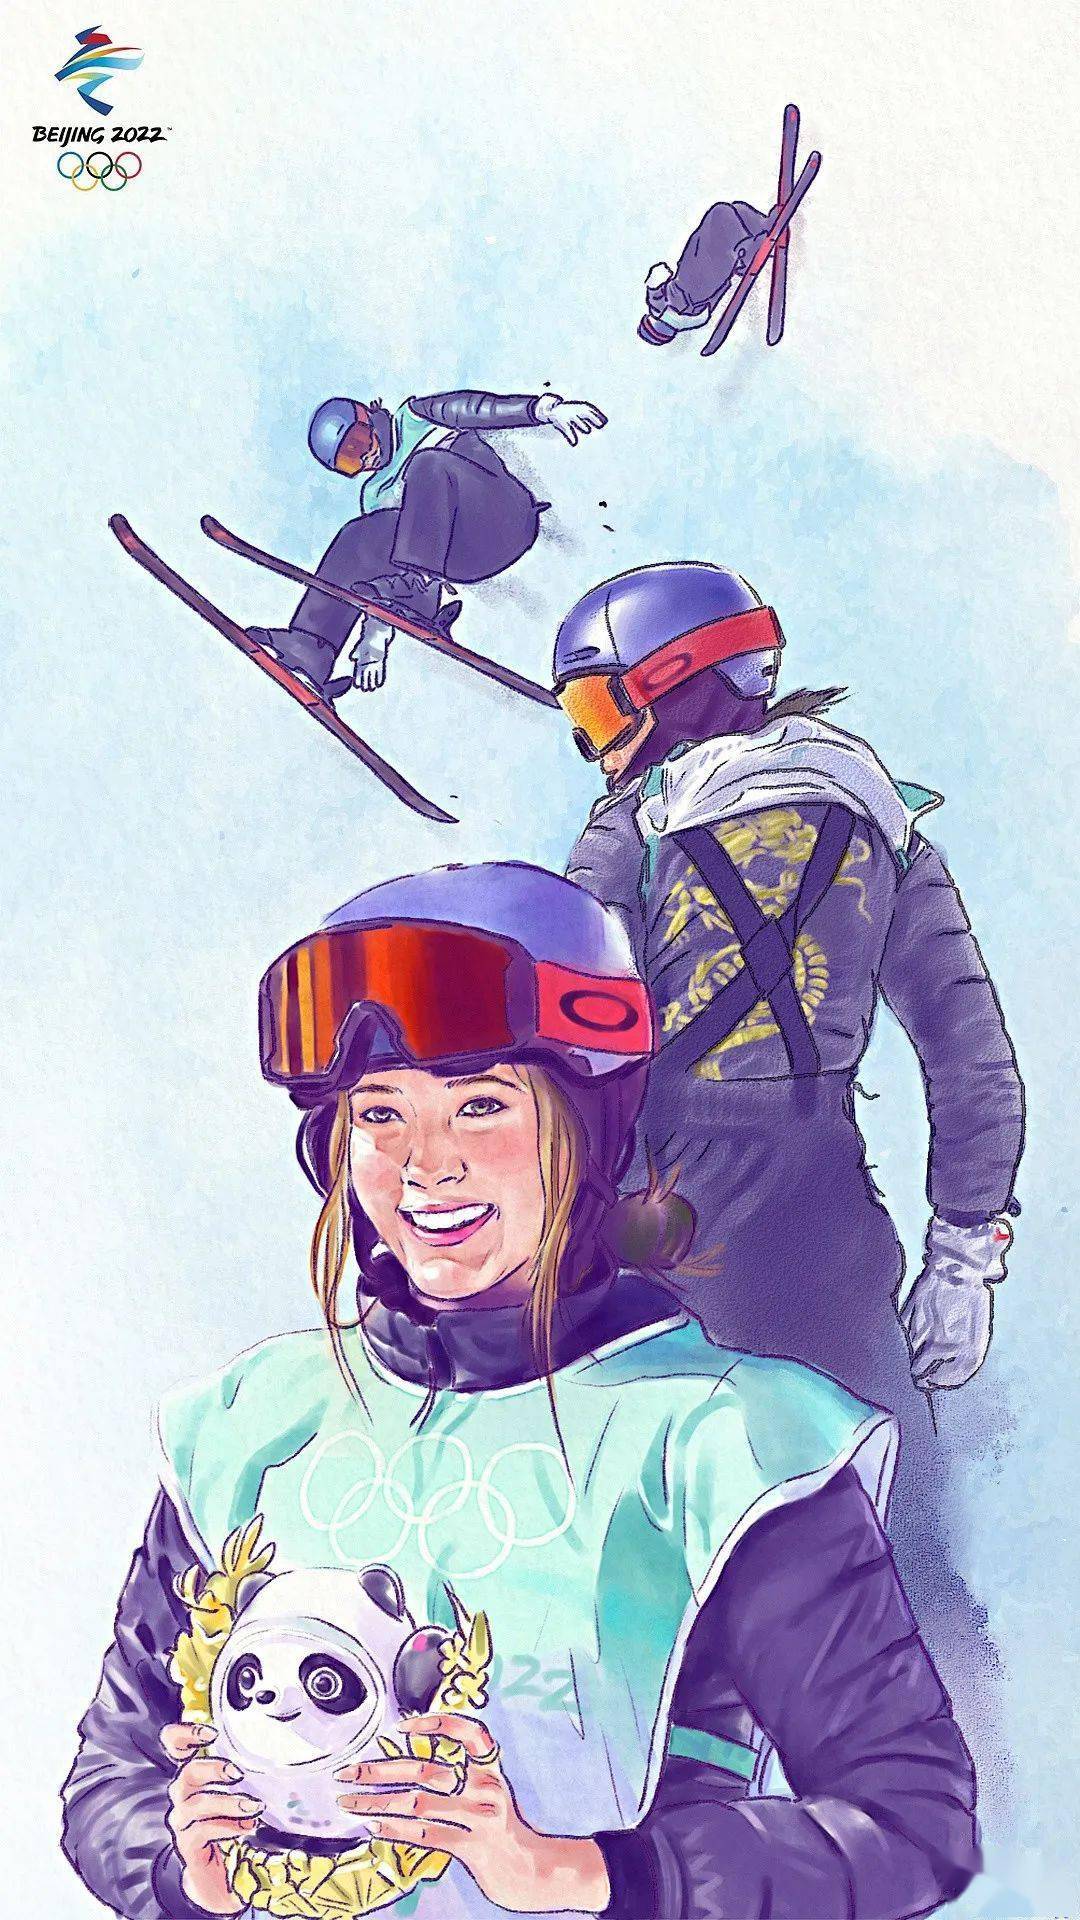 谷爱凌滑雪漫画人物图片